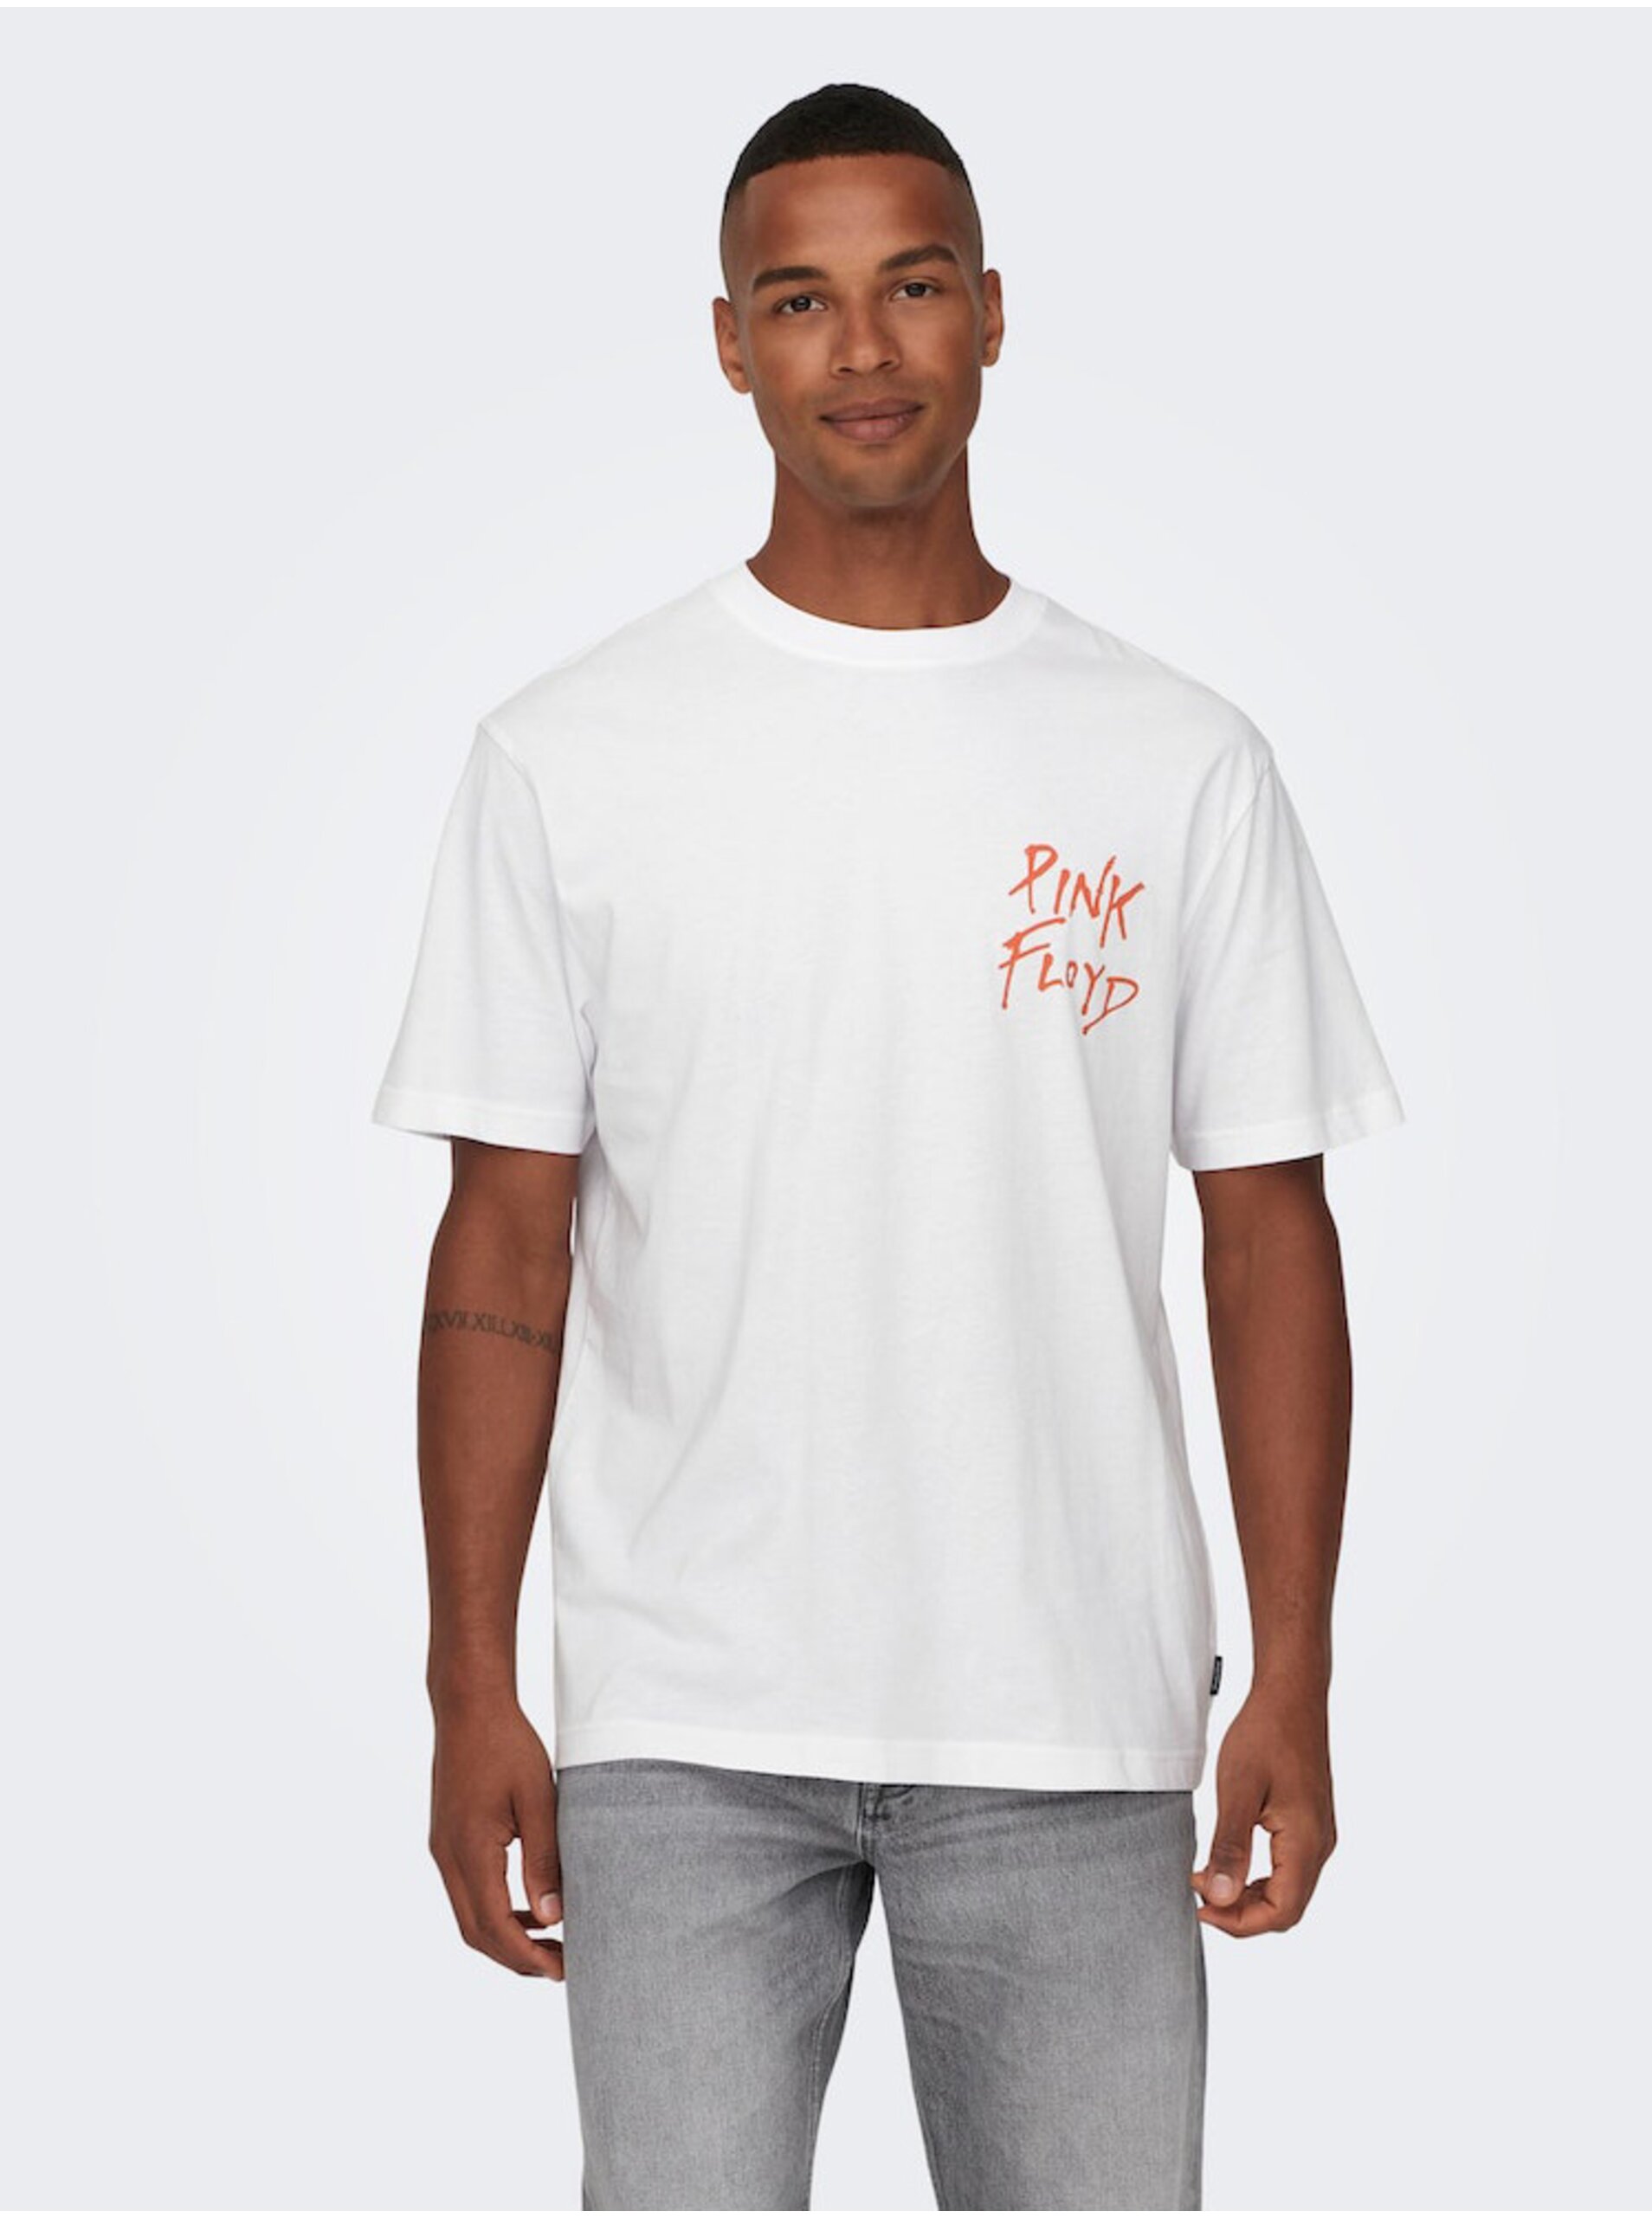 E-shop Biele pánske tričko s krátkym rukávom ONLY & SONS Pink Floyd